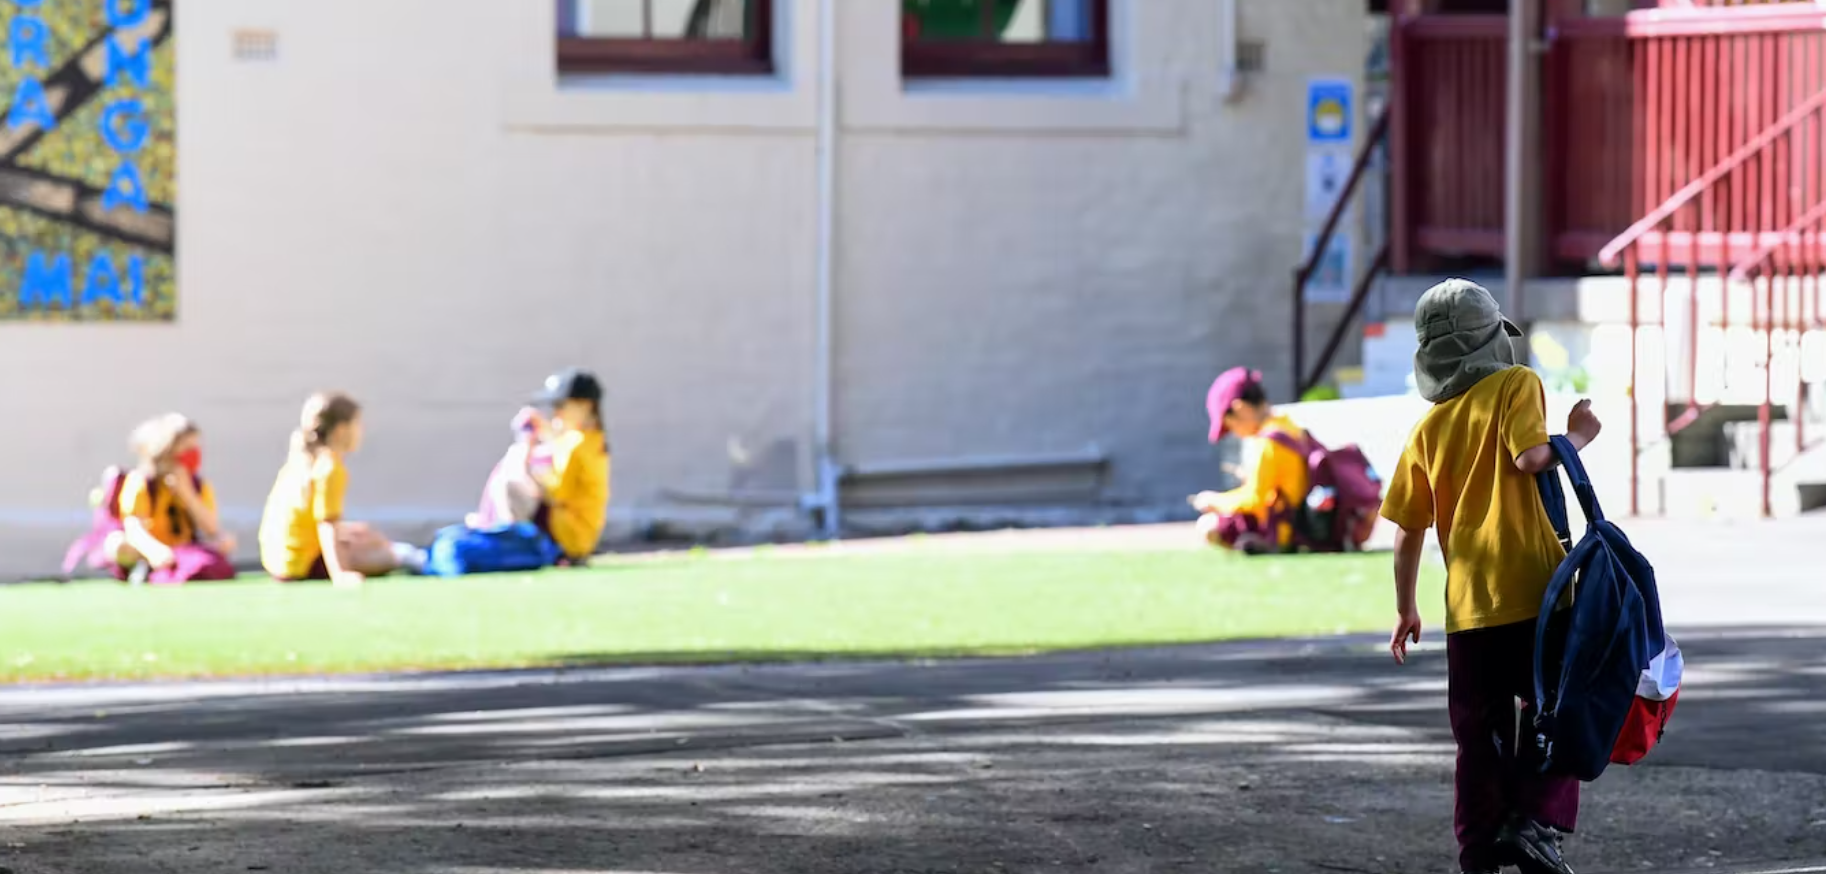 Chính quyền bang Úc cấm phụ huynh vào sân trường để tránh hành hung giáo viên